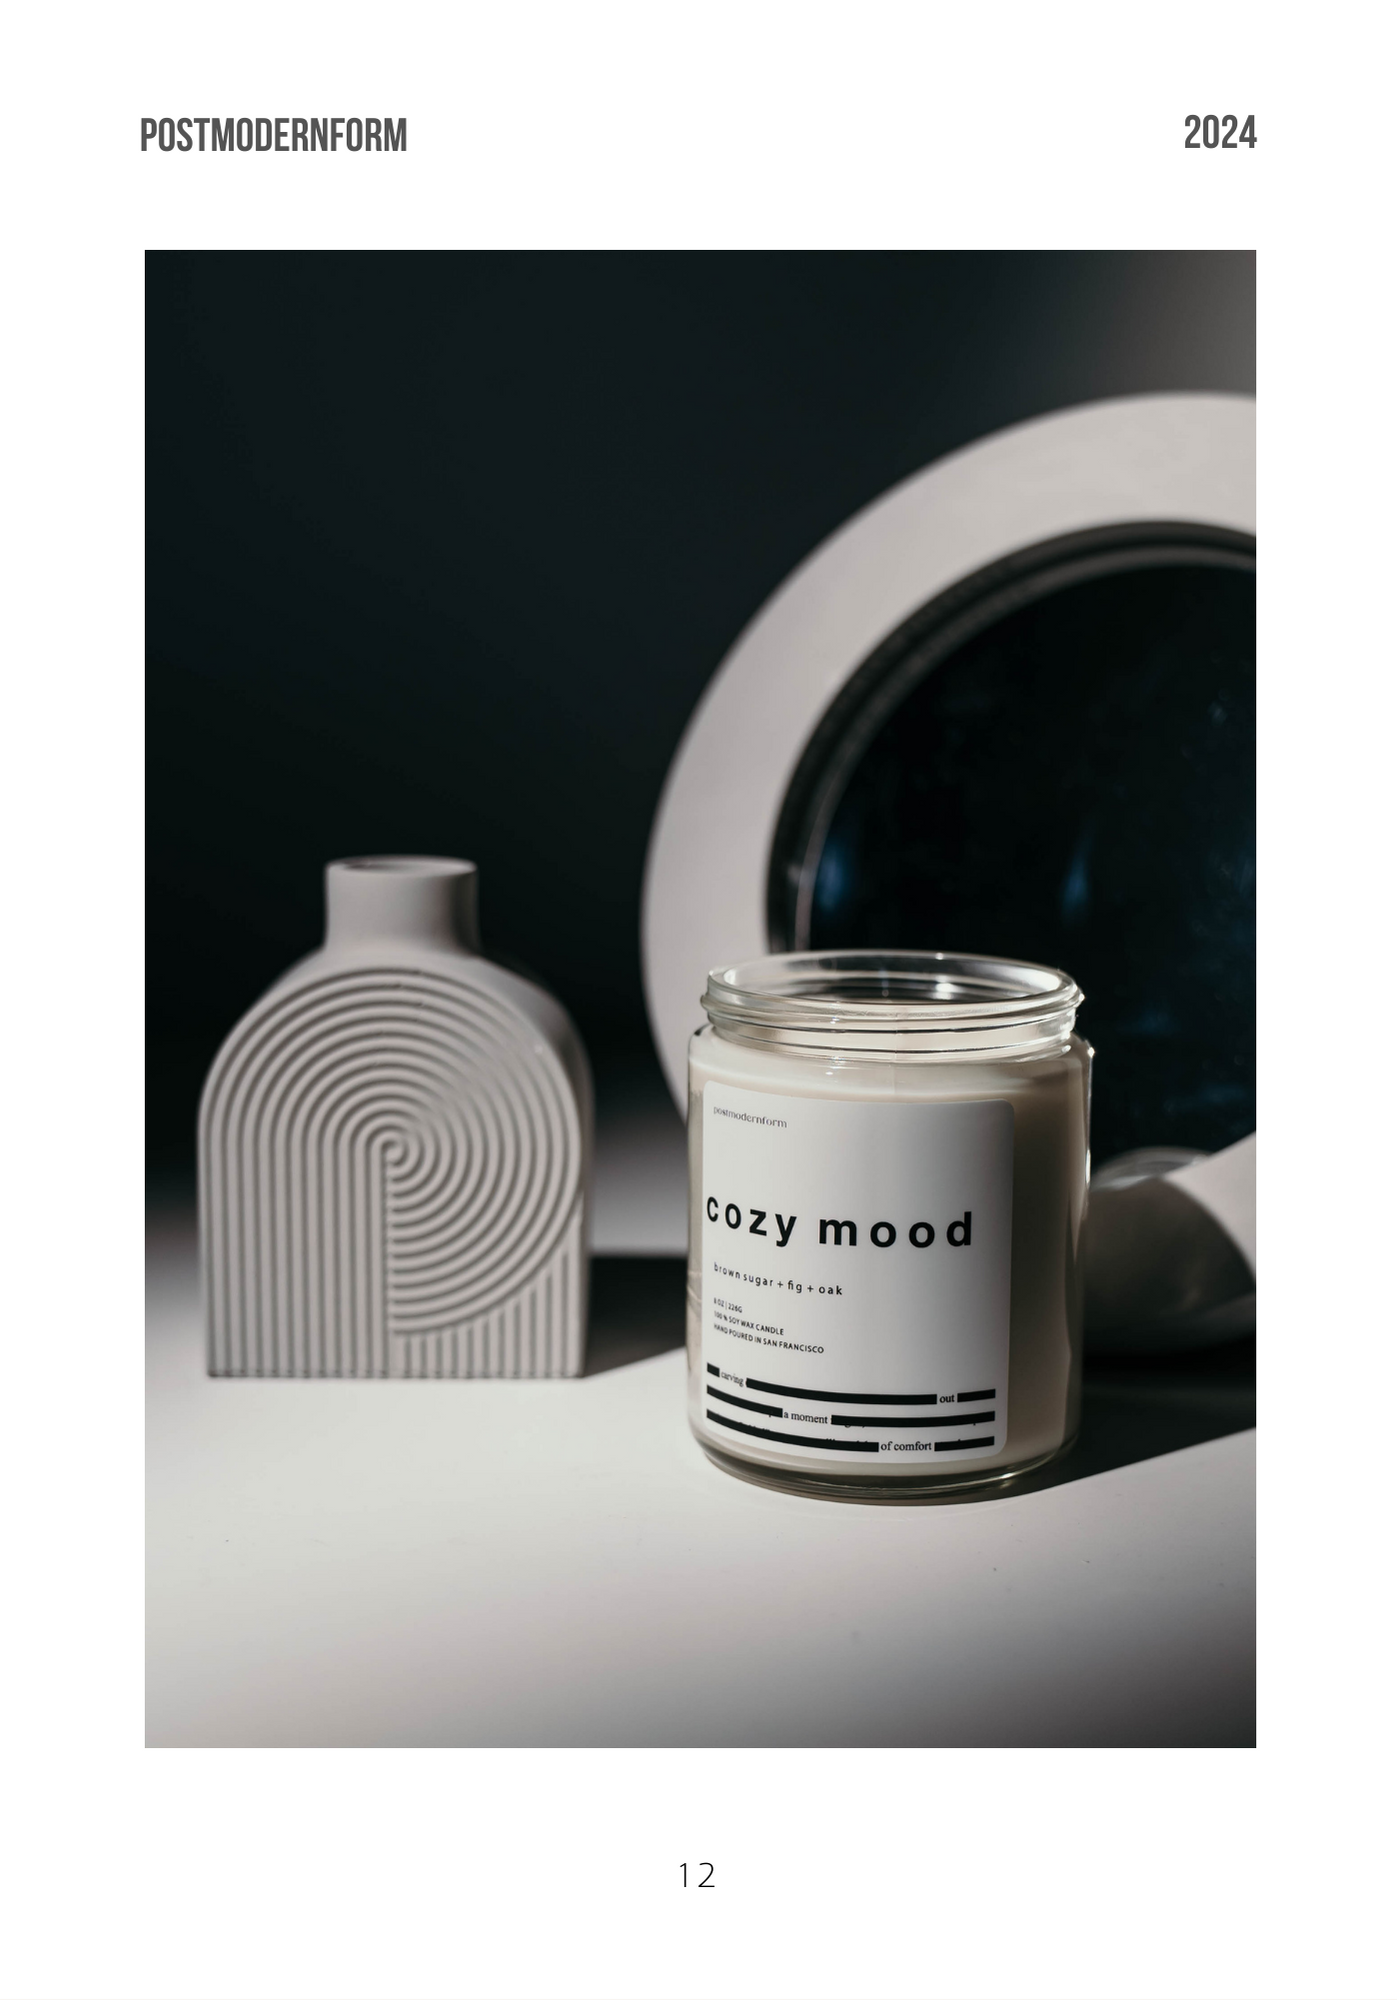 postmodernform lookbook cozy mood candle compact vase concrete mirror